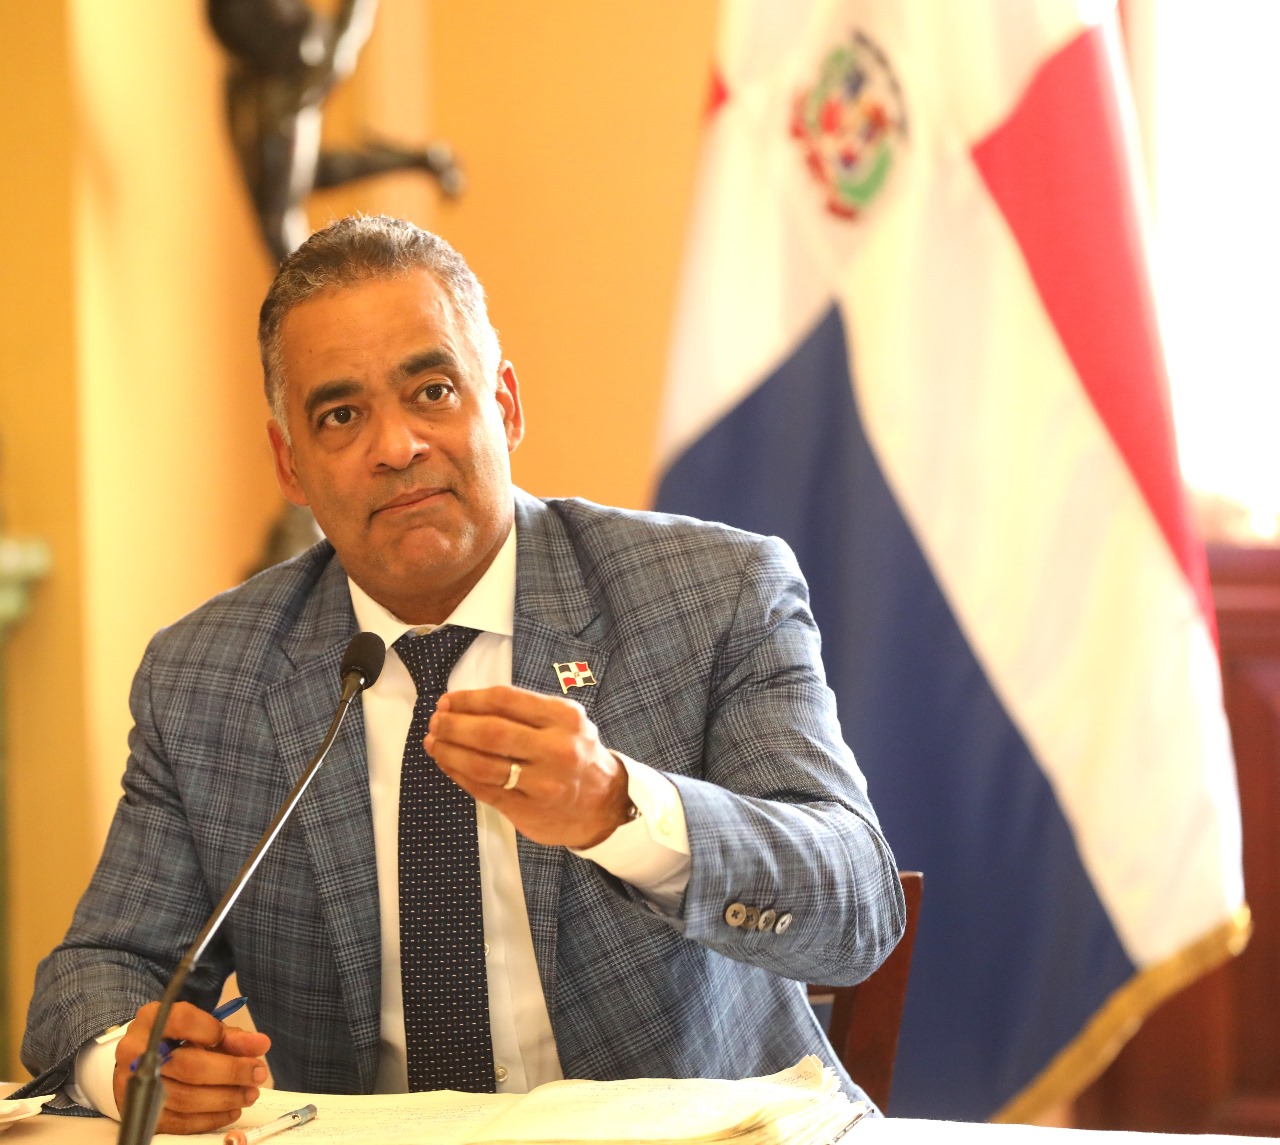 Ministro Santos Echavarría notificó a instituciones públicas para cumplimiento Ley 200-04 sobre Libre Acceso a la Información